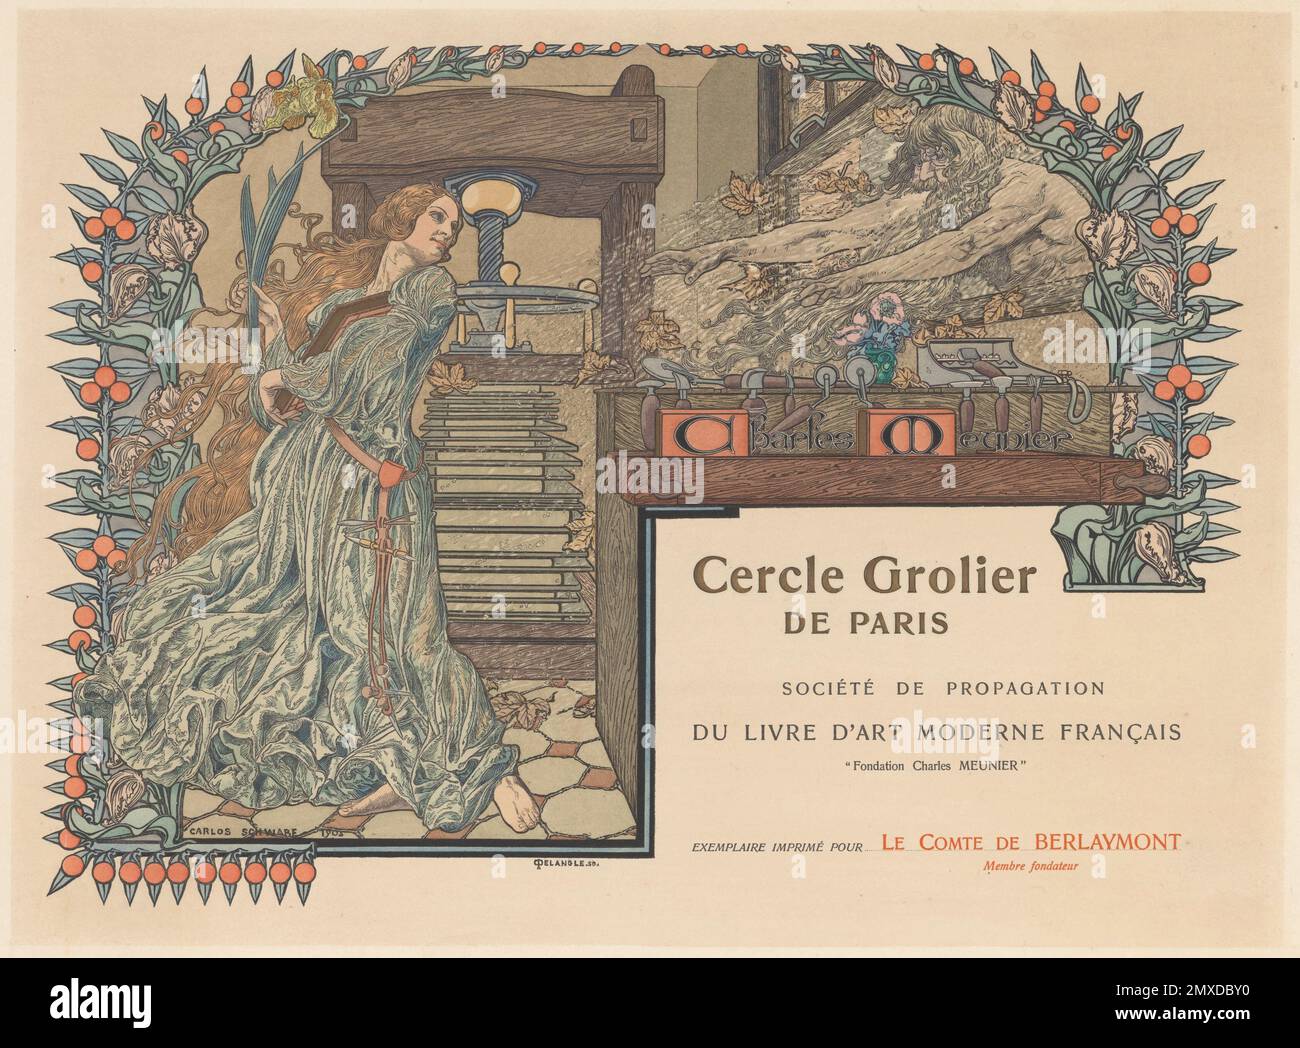 Cercle Grolier de Paris. Museum: PRIVATE COLLECTION. Author: CARLOS ...